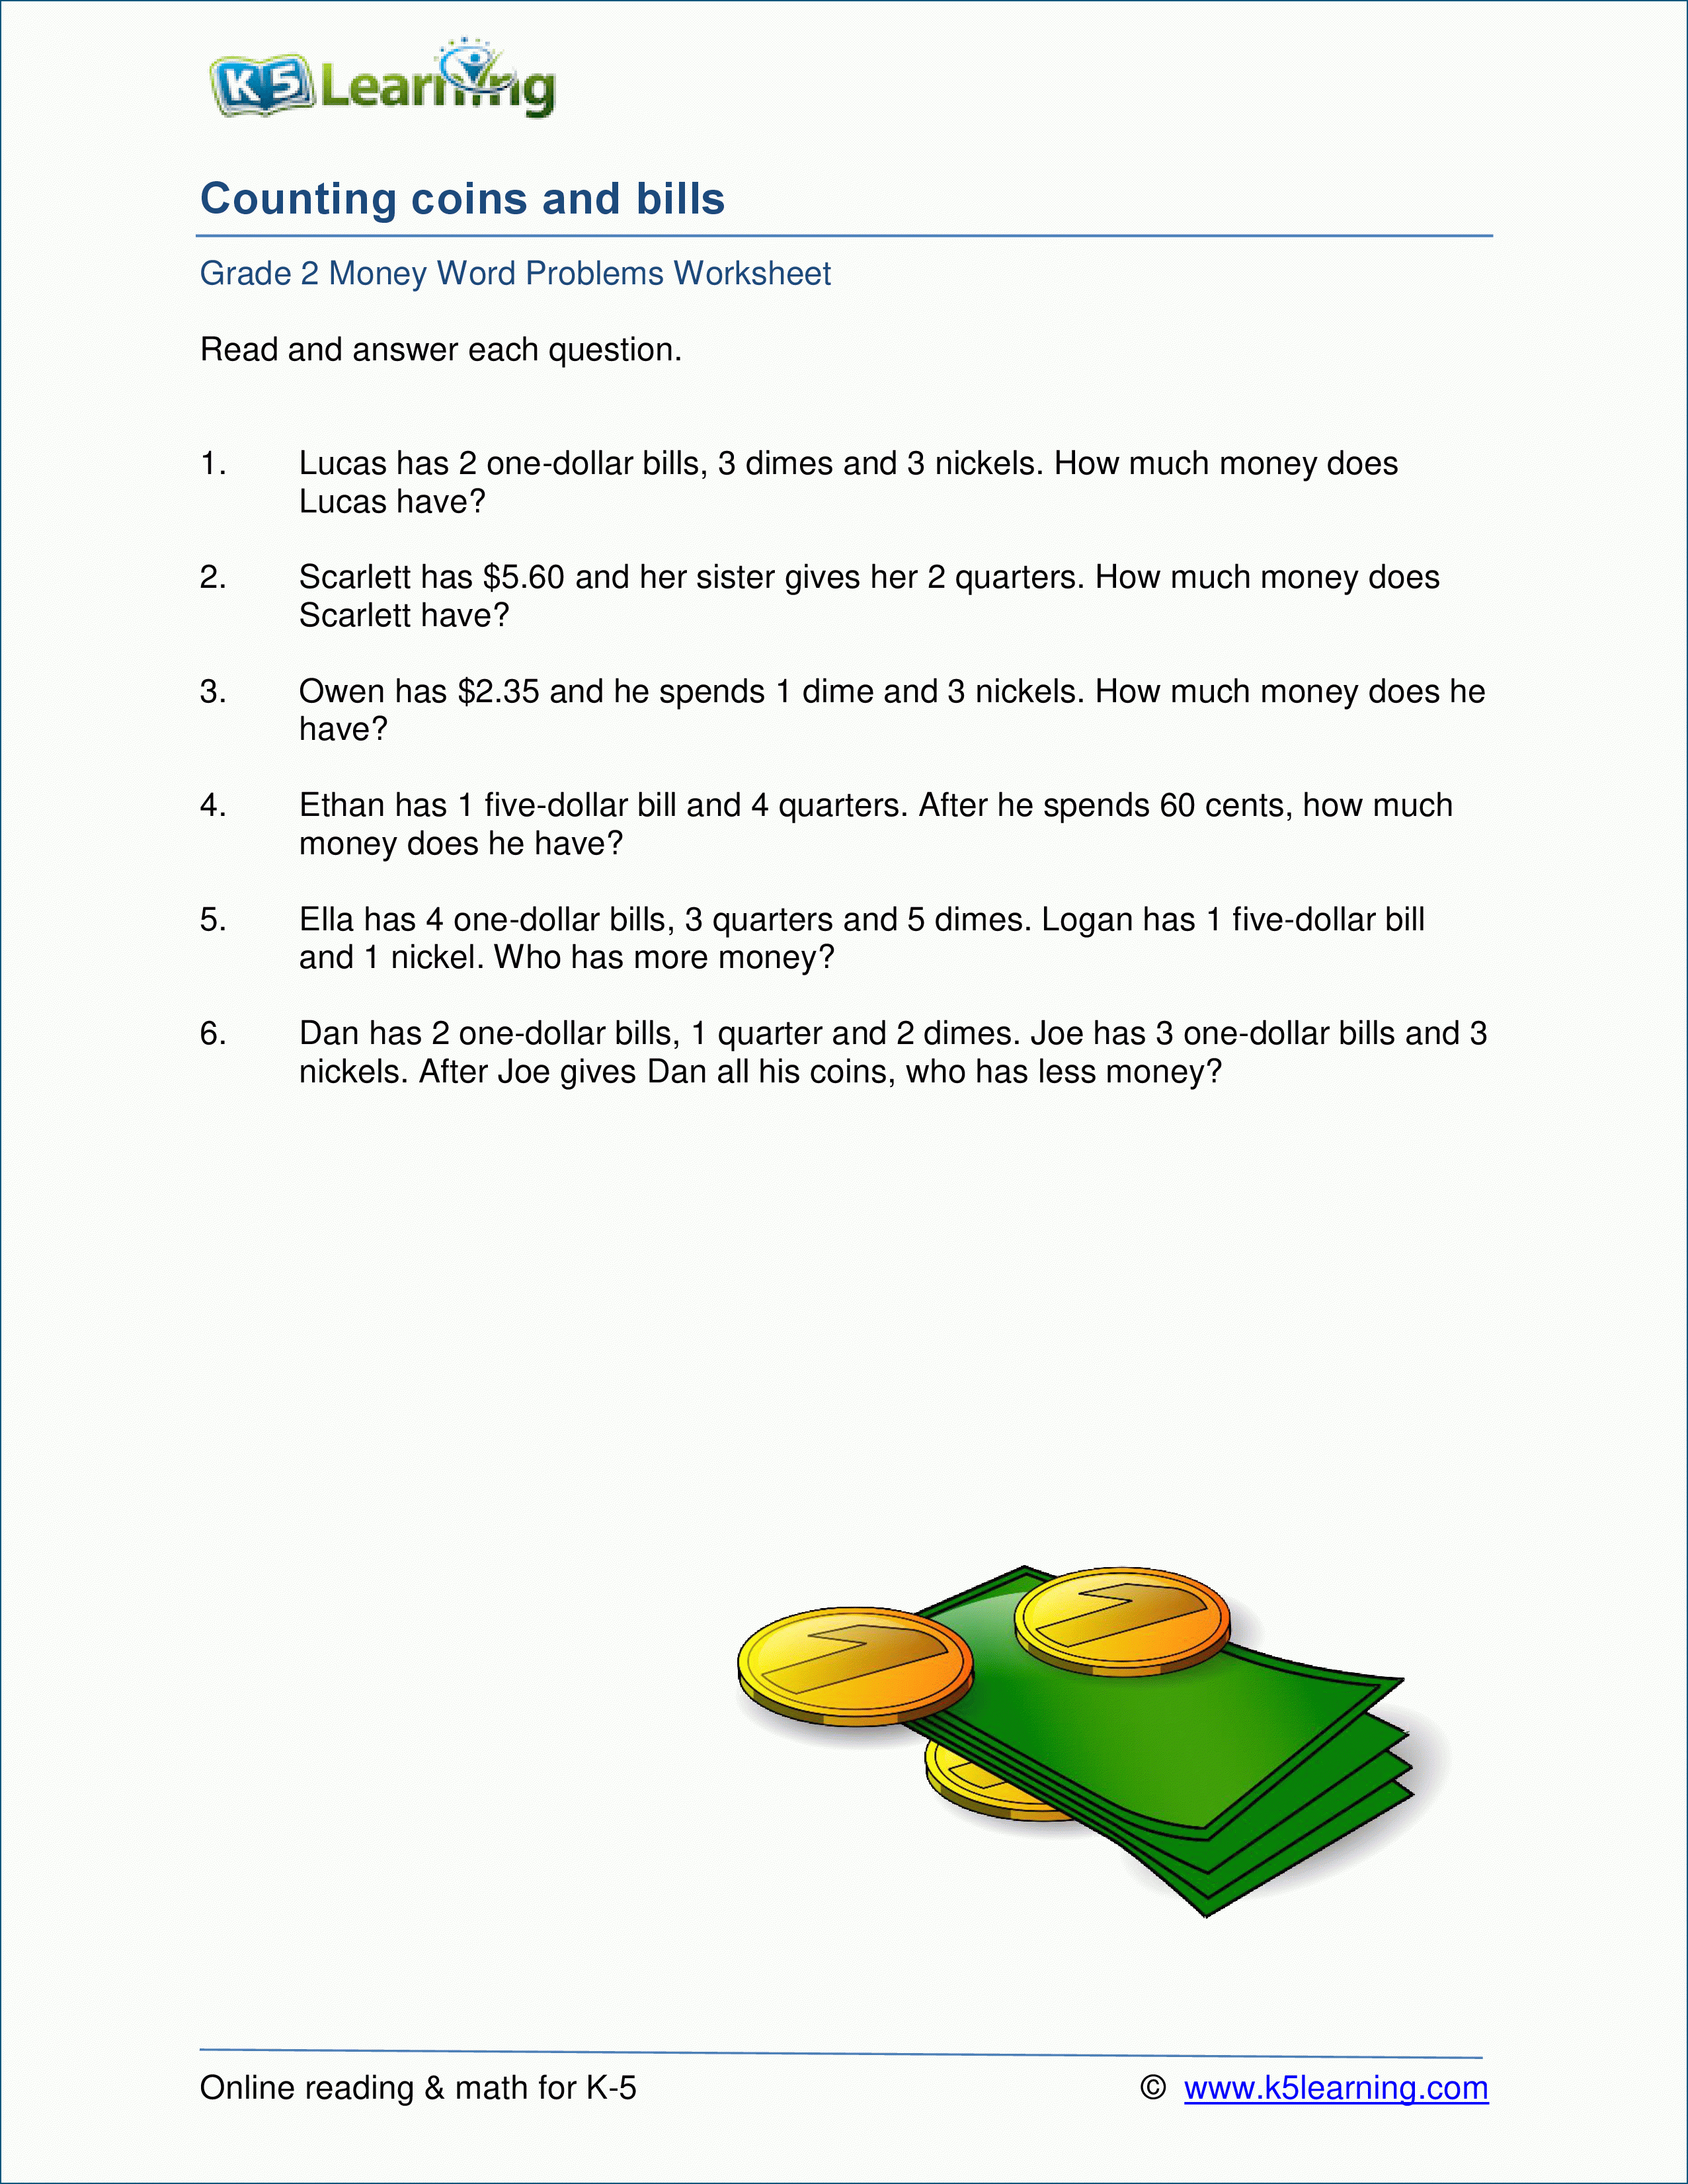 Grade 2 Money Word Problem Worksheets | K5 Learning - Free Printable Money Word Problems Worksheets